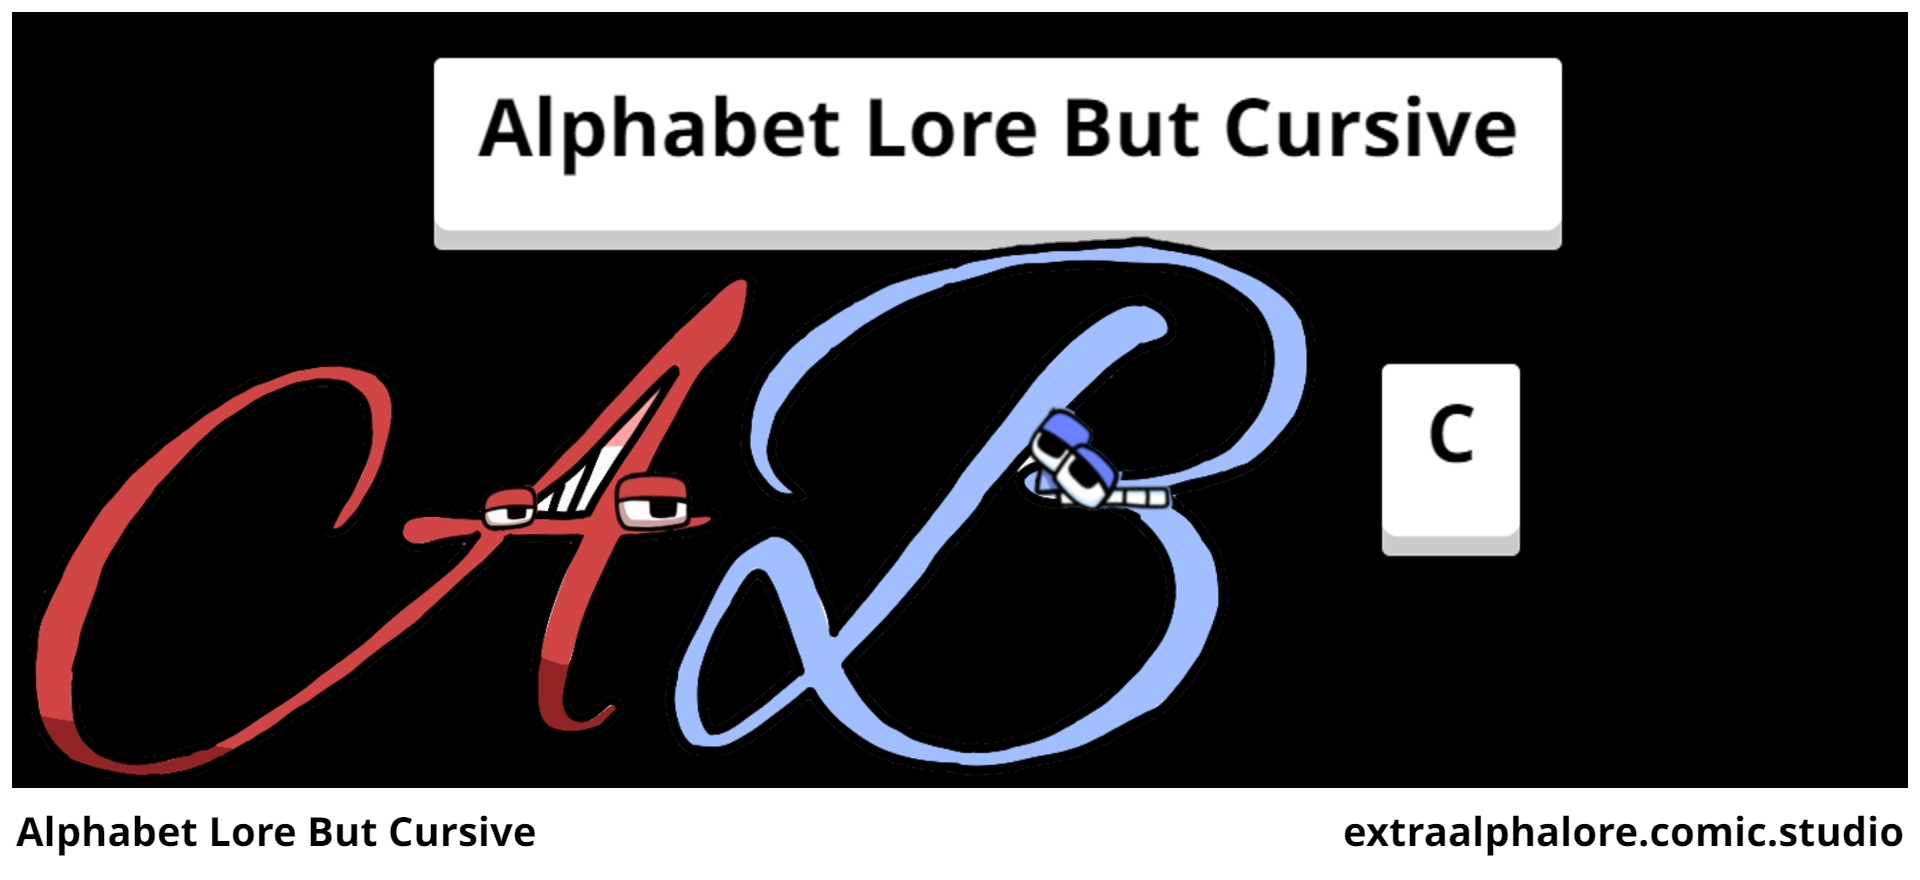 Alphabet Lore But Cursive